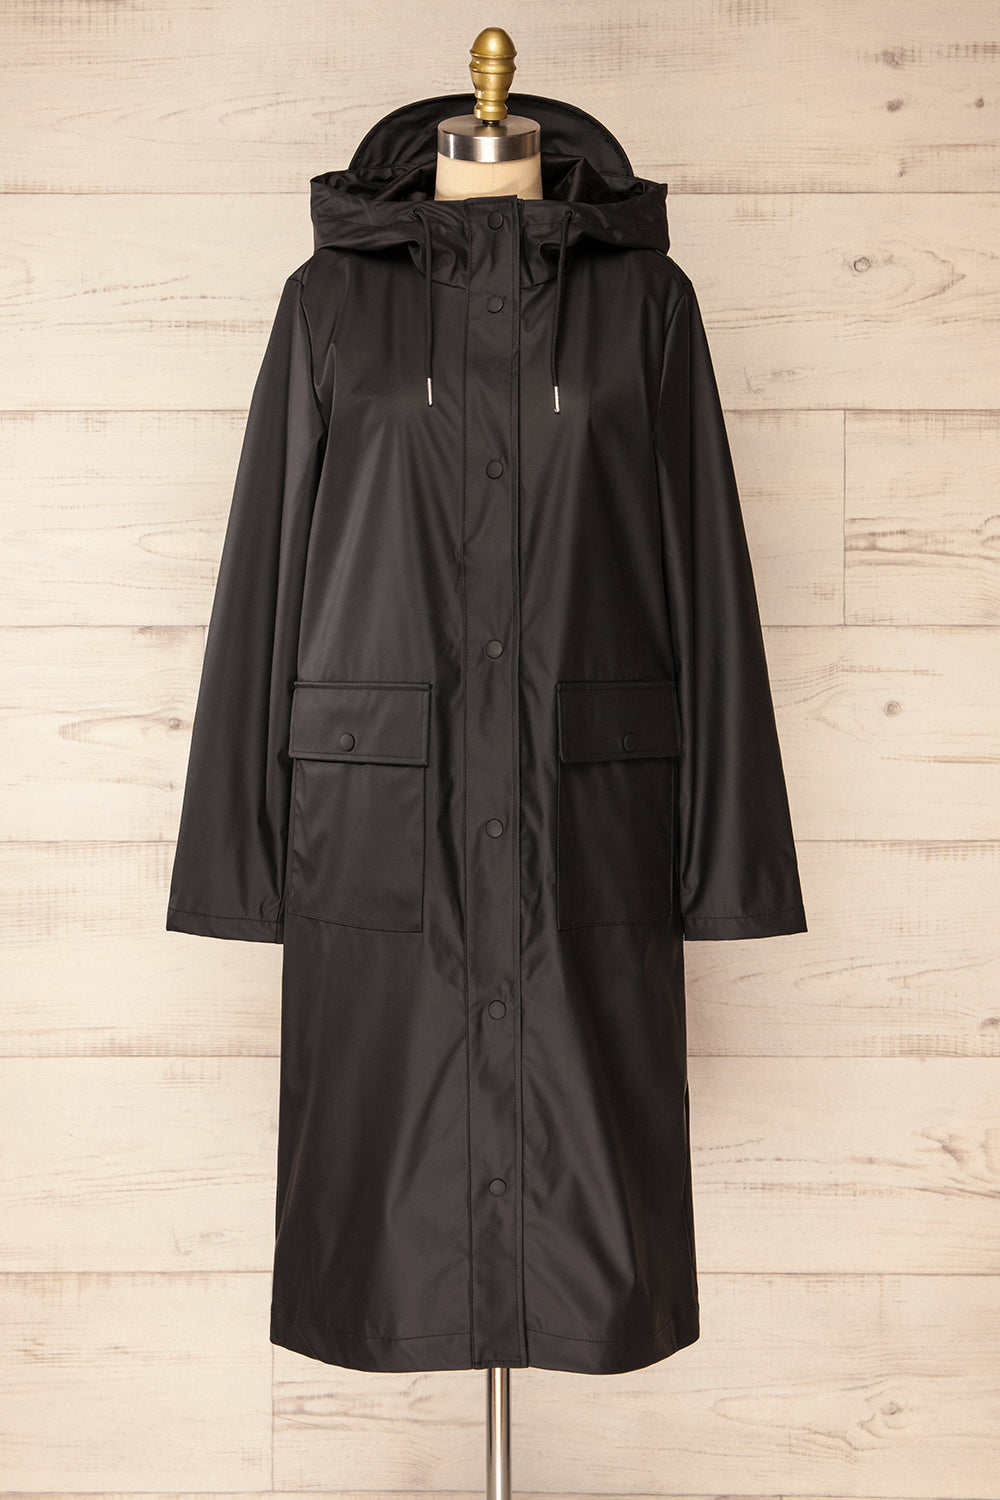 Rochester Black Button Up Hooded Raincoat | La petite garçonne front view 